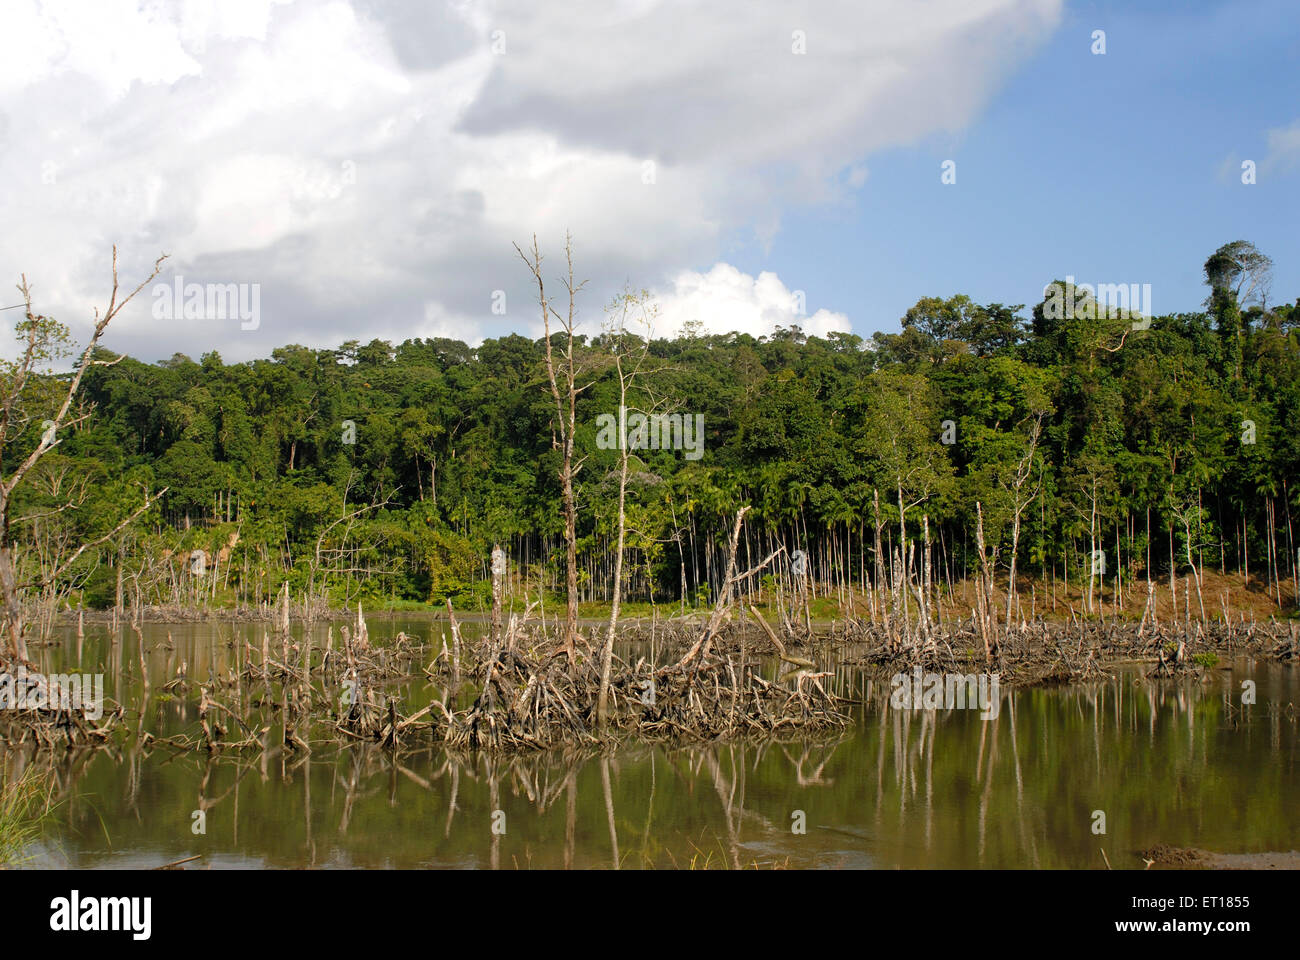 Mangrovenwurzeln, Rote-Haut-Insel, Marine-Nationalpark, Port Blair, Andaman- und Nicobarinseln, Unionsgebiet Indien, UT, Indien, Asien Stockfoto